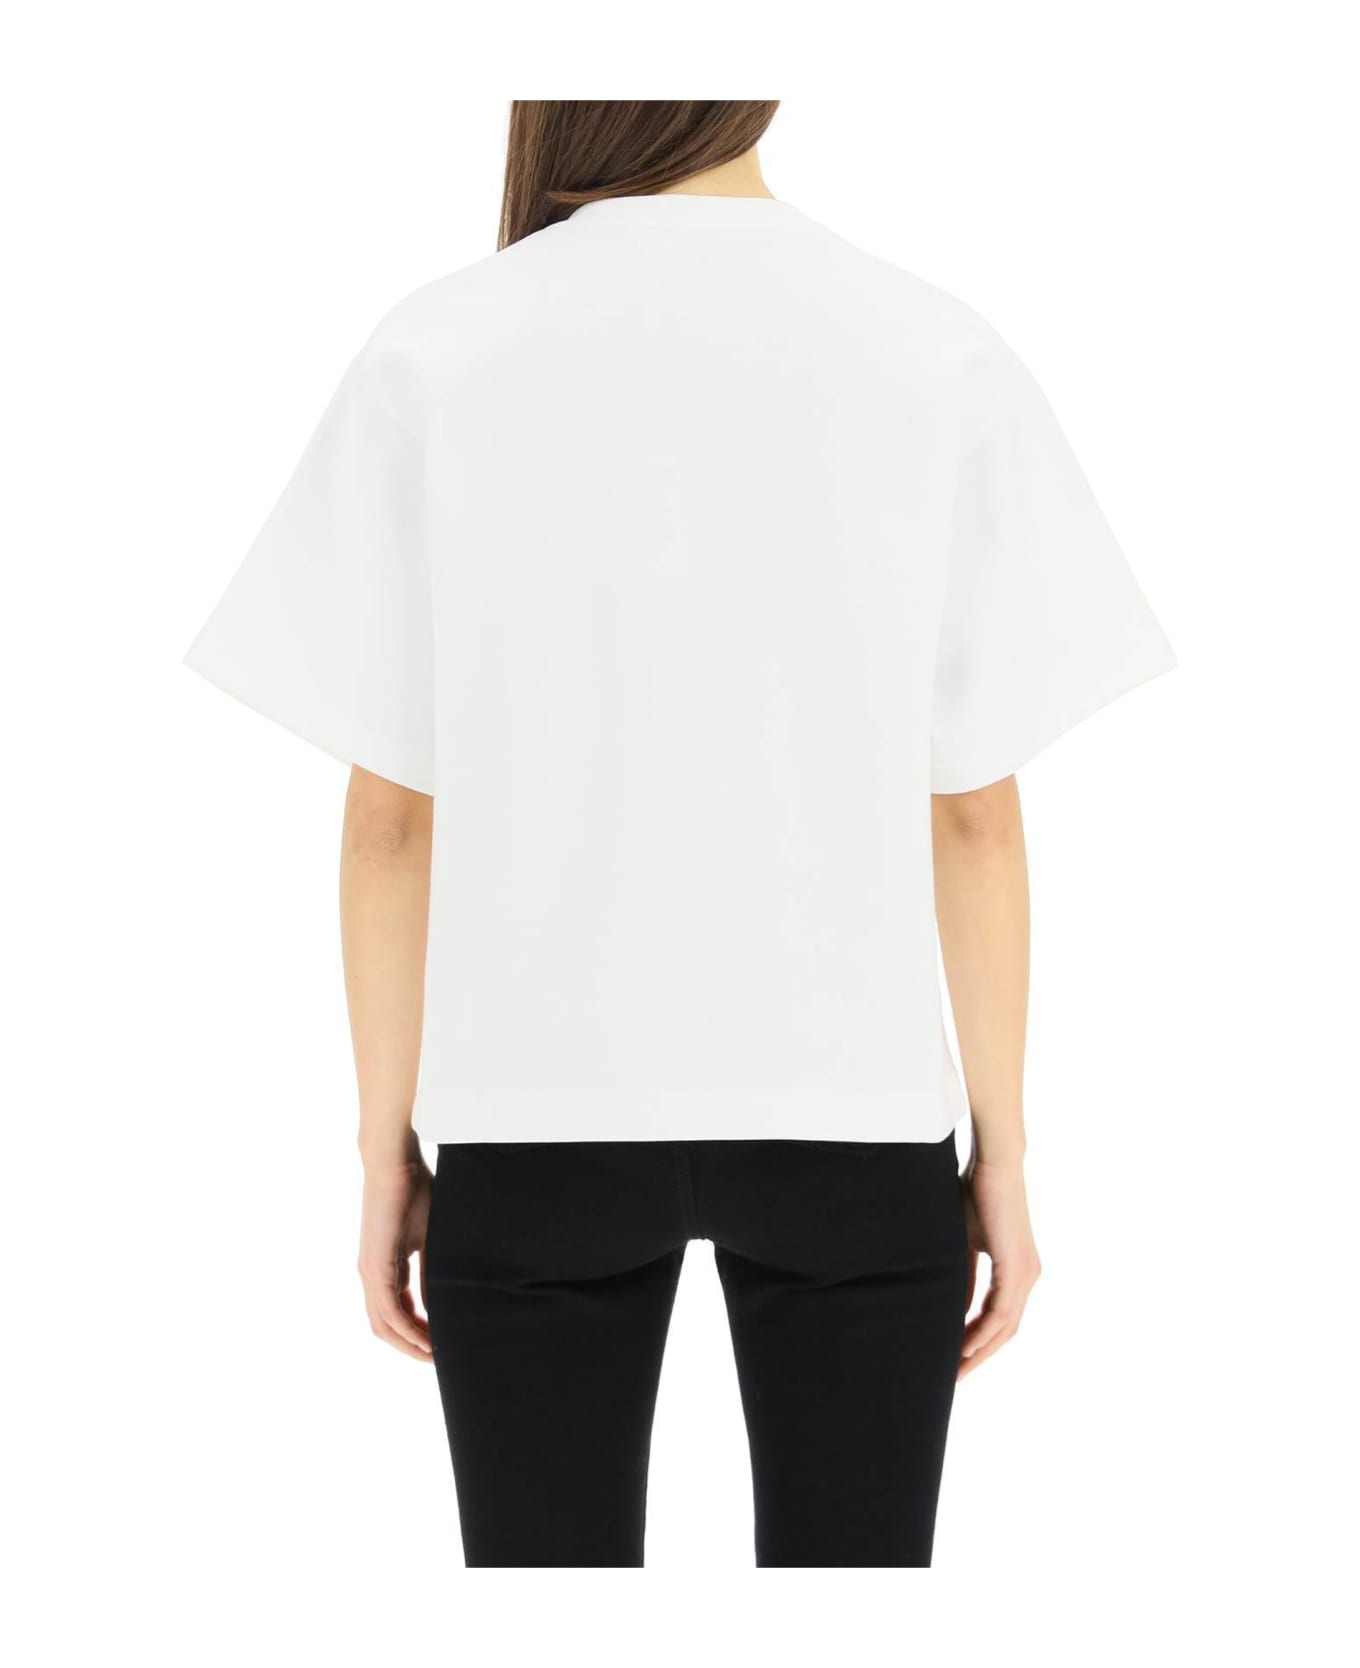 Dolce & Gabbana Hot T-shirt - White Tシャツ